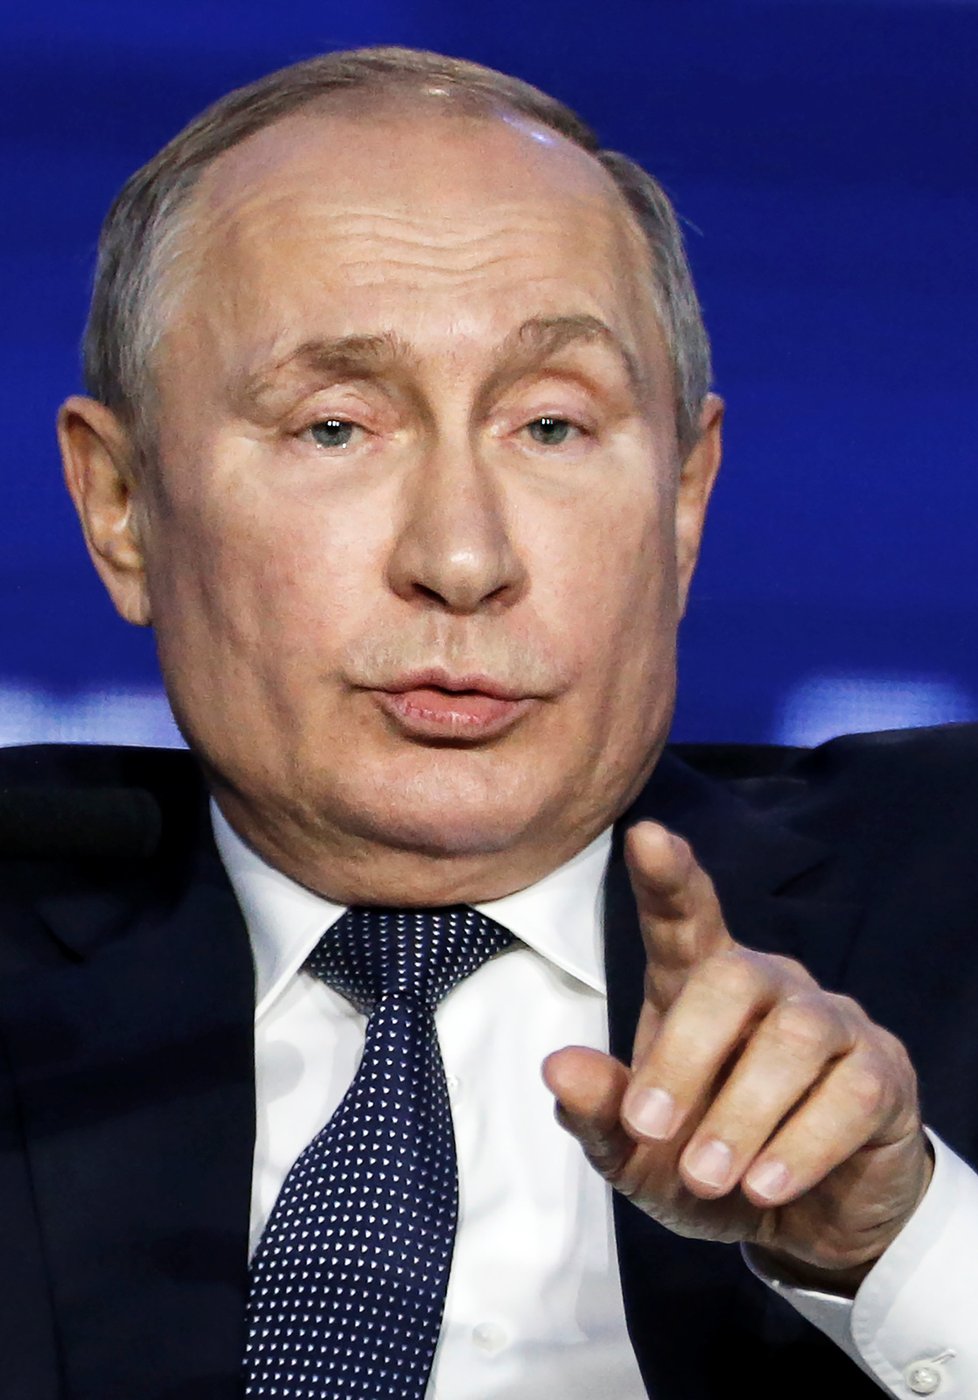 Vladimir Putin na investičním fóru v Moskvě